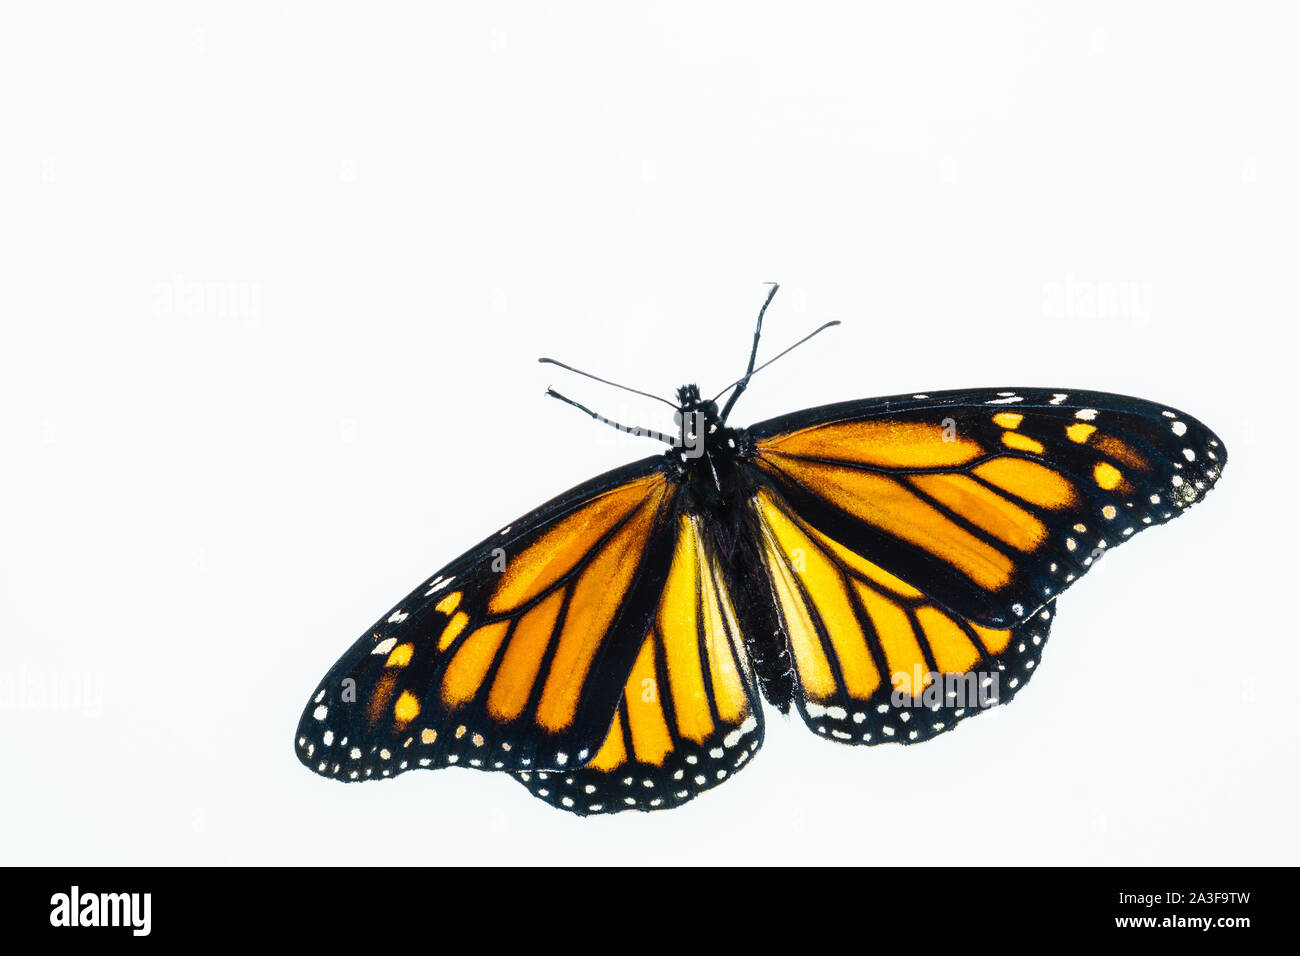 Vue de dessus d'un papillon monarque femme vivant. Les ailes sont ouvertes et elles sont apparues récemment à partir de la chrysalide. Banque D'Images